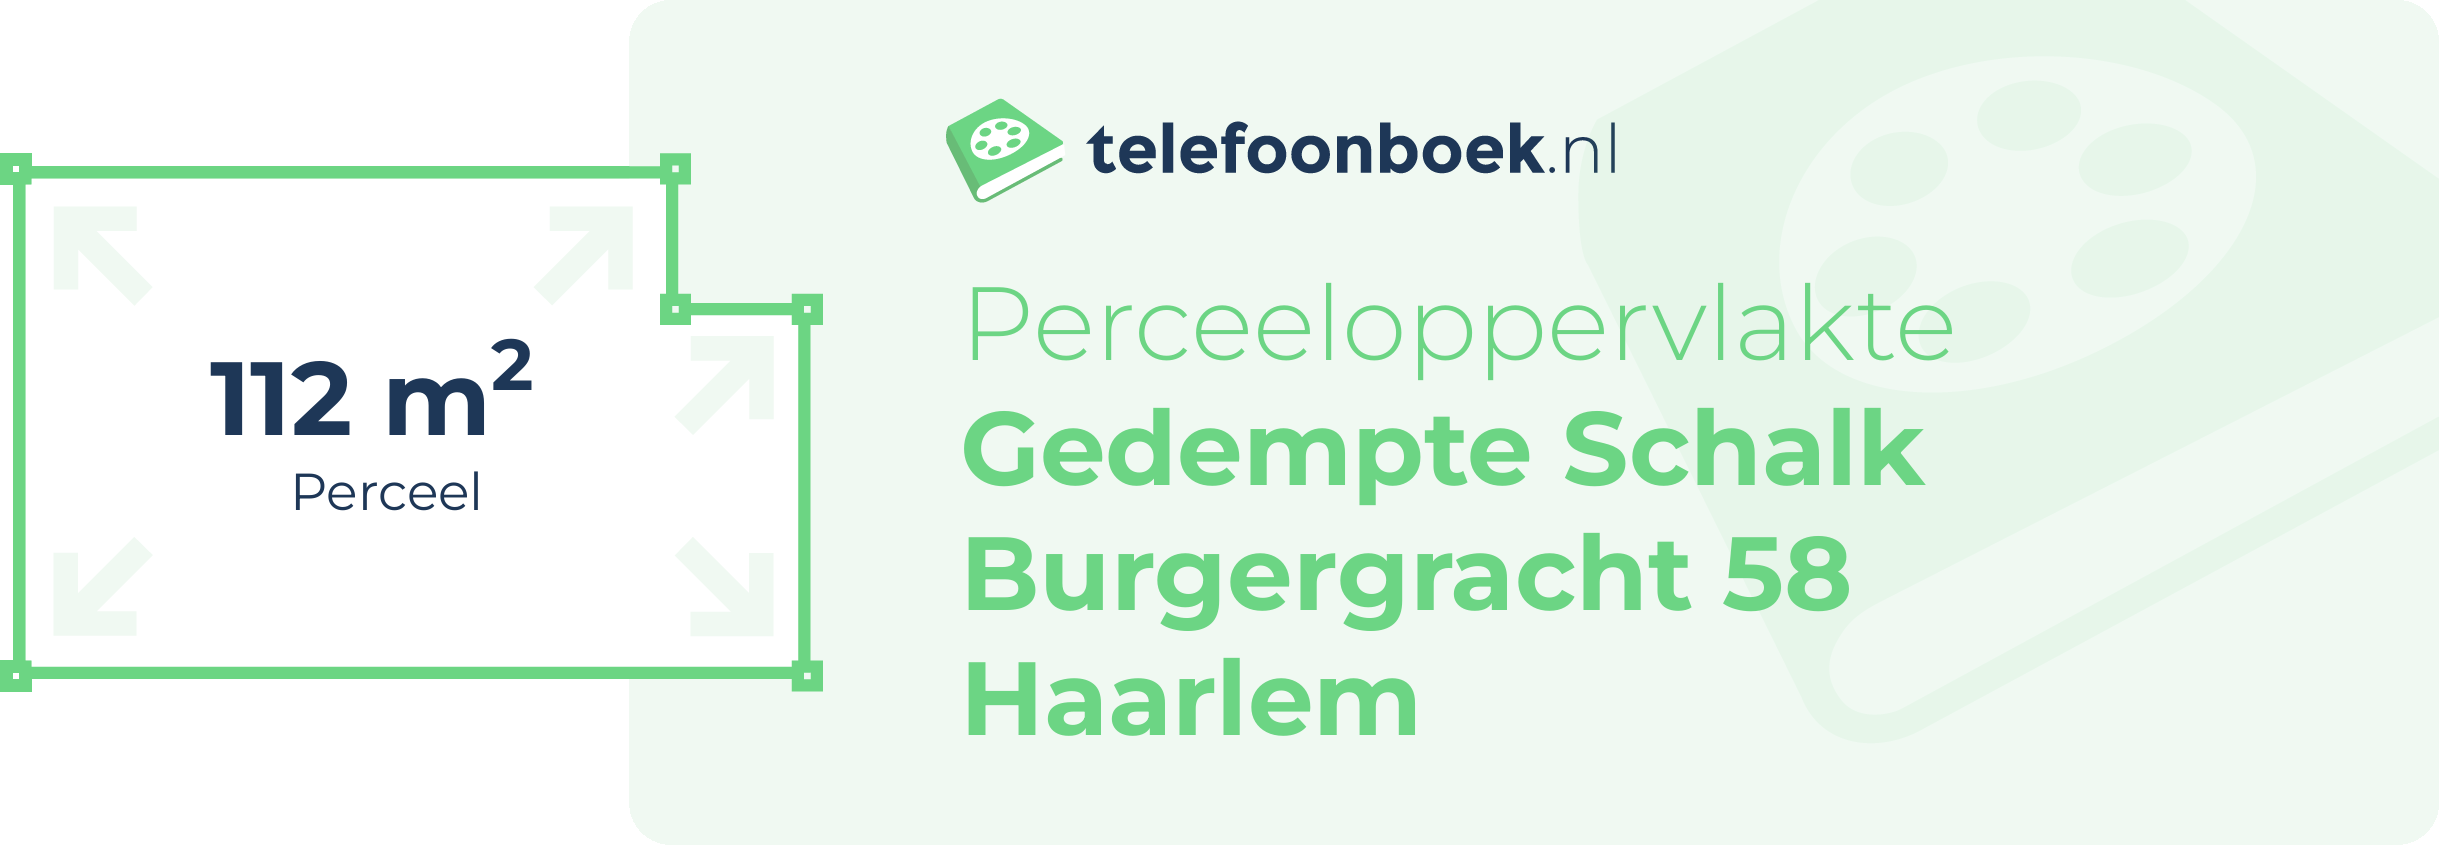 Perceeloppervlakte Gedempte Schalk Burgergracht 58 Haarlem